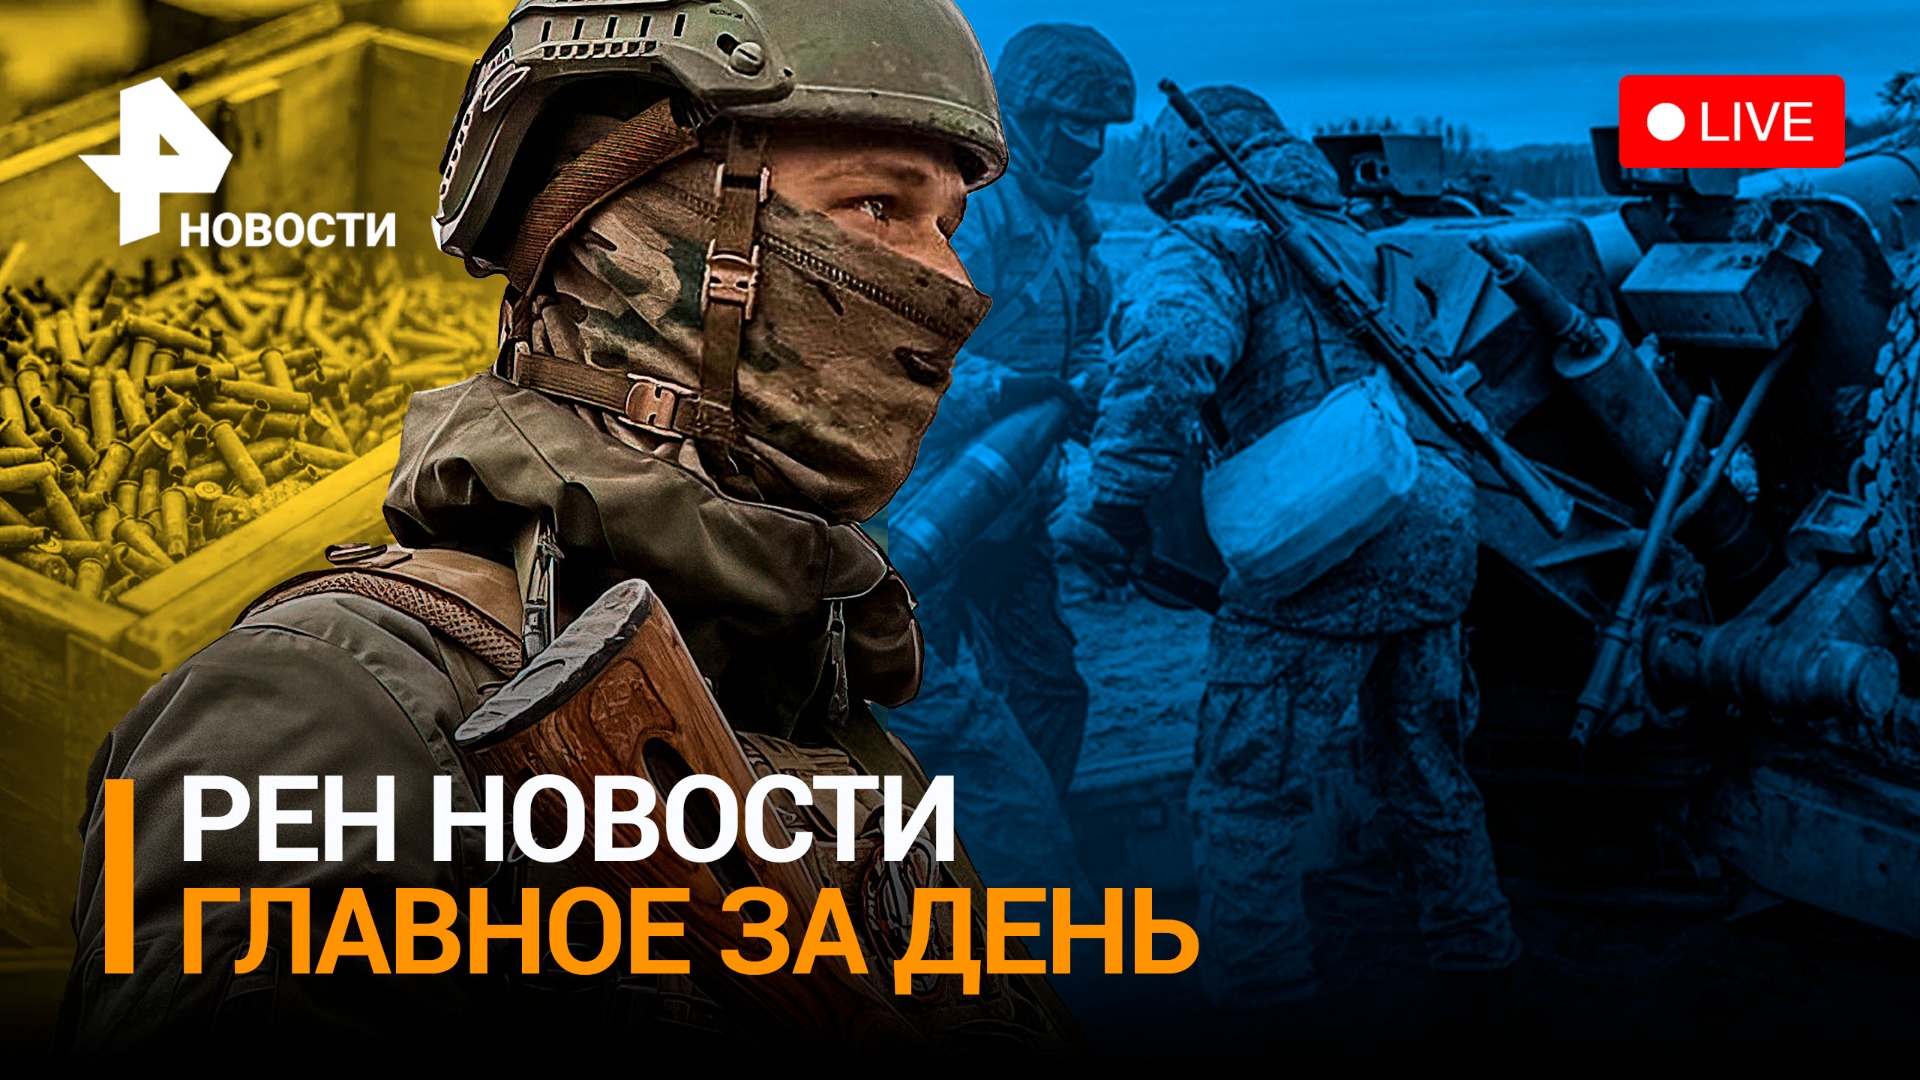 Двуречное под контролем РФ: армия закрепилась в южных районах Угледара / РЕН НОВОСТИ 19:30